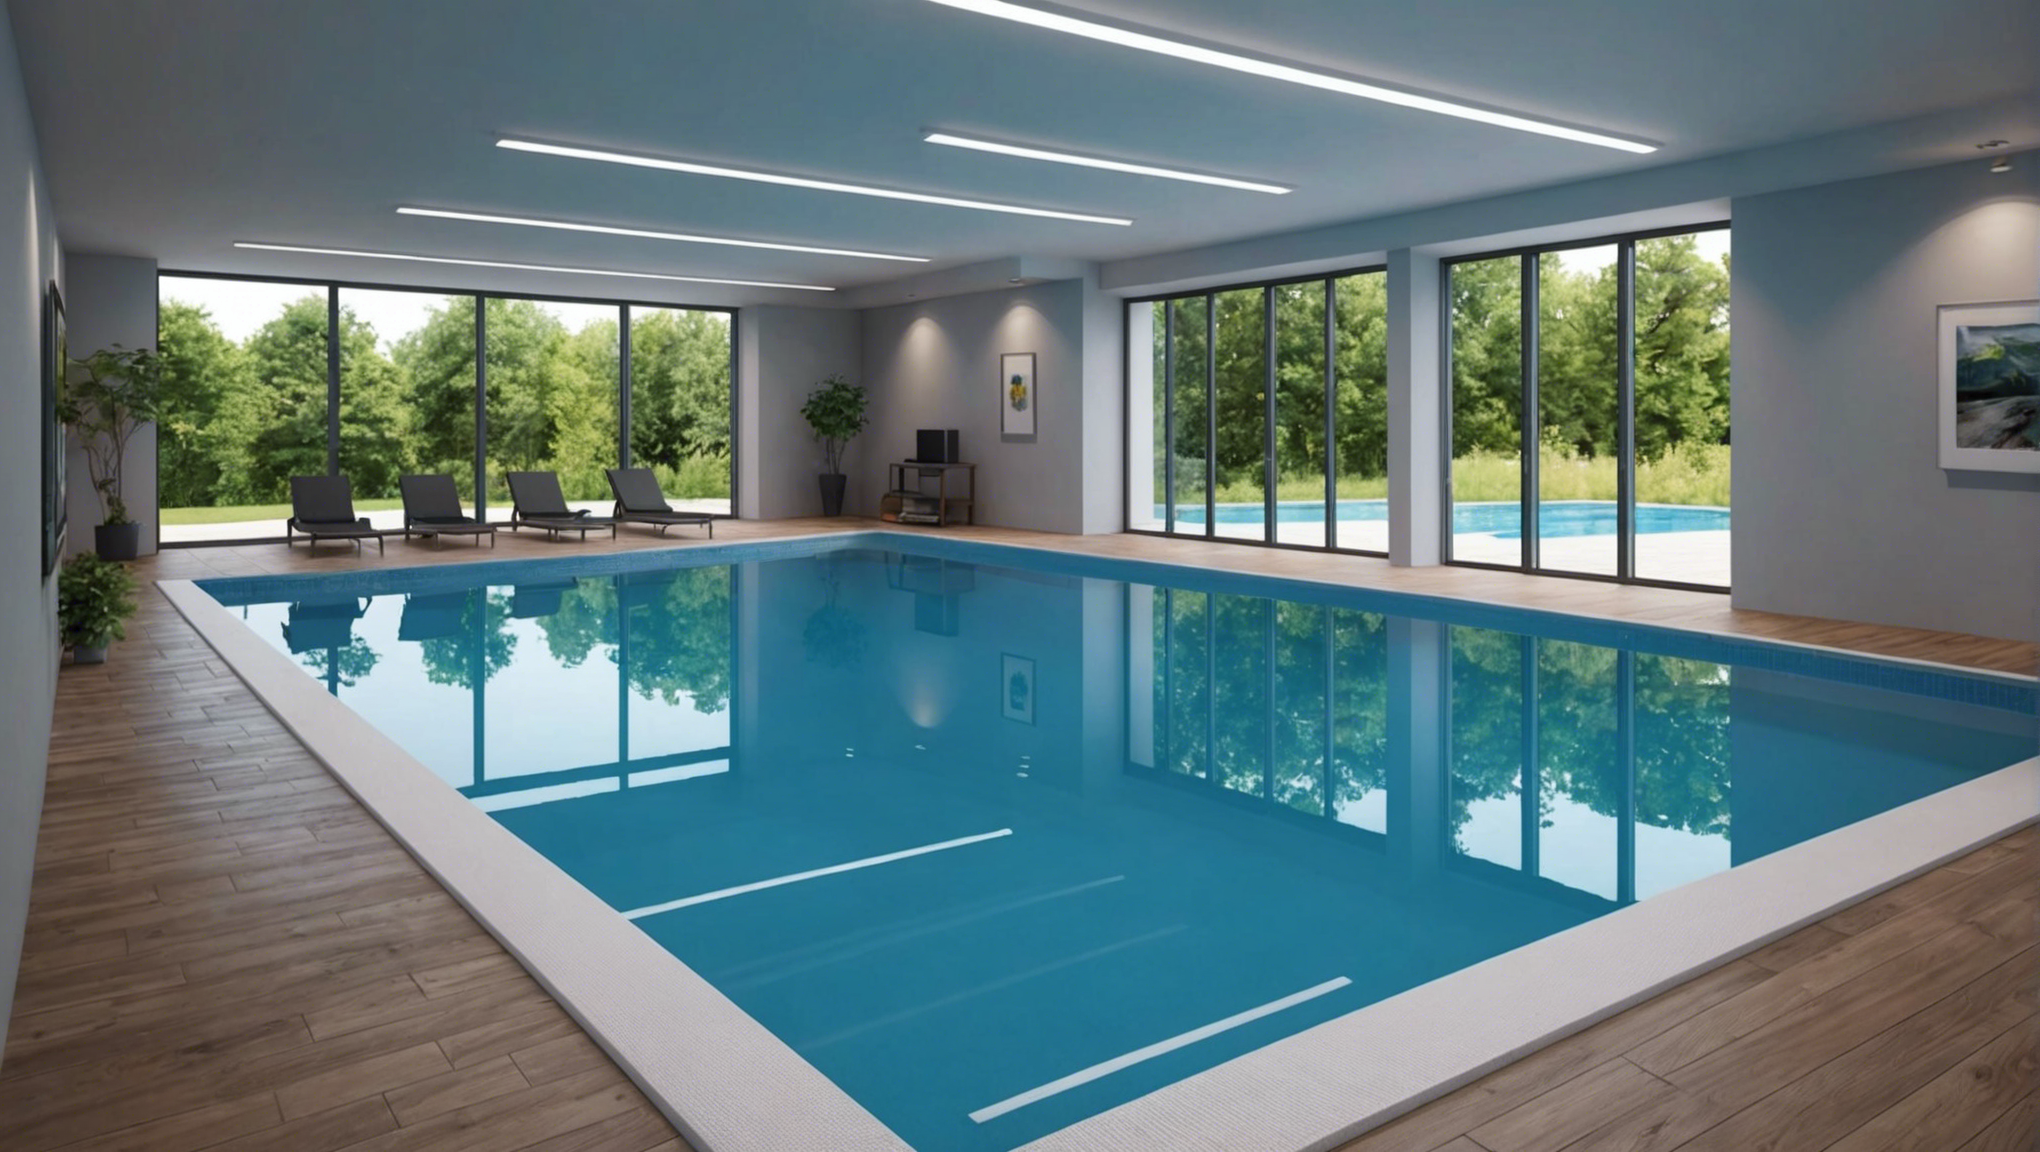 découvrez l'emplacement idéal pour le local technique de votre piscine et optimisez son installation pour un fonctionnement optimal.